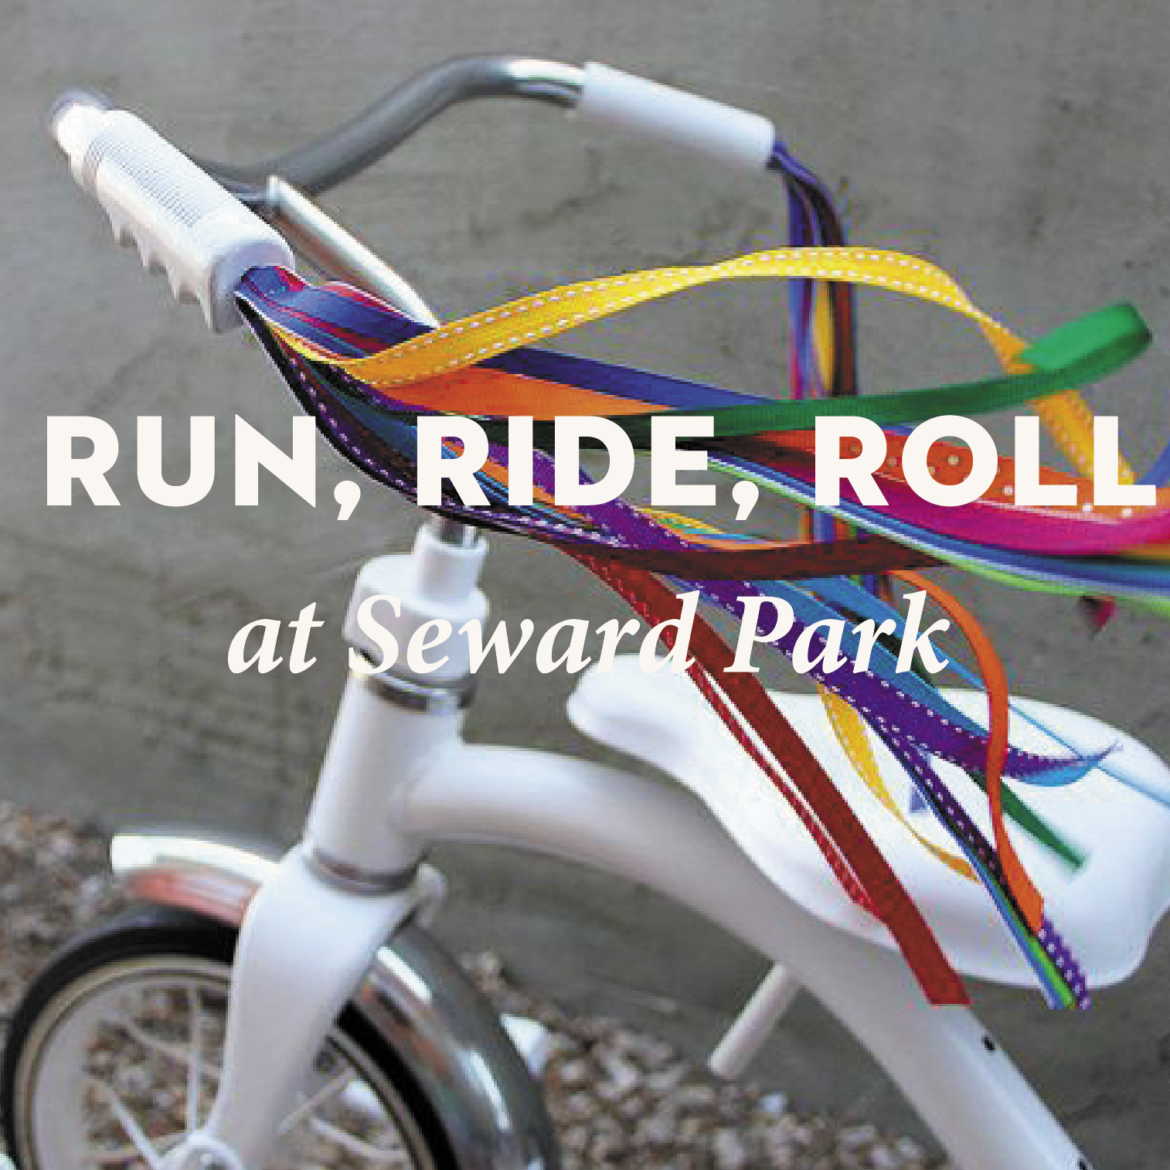 Pentecost Ride/Run/Roll at Seward Park